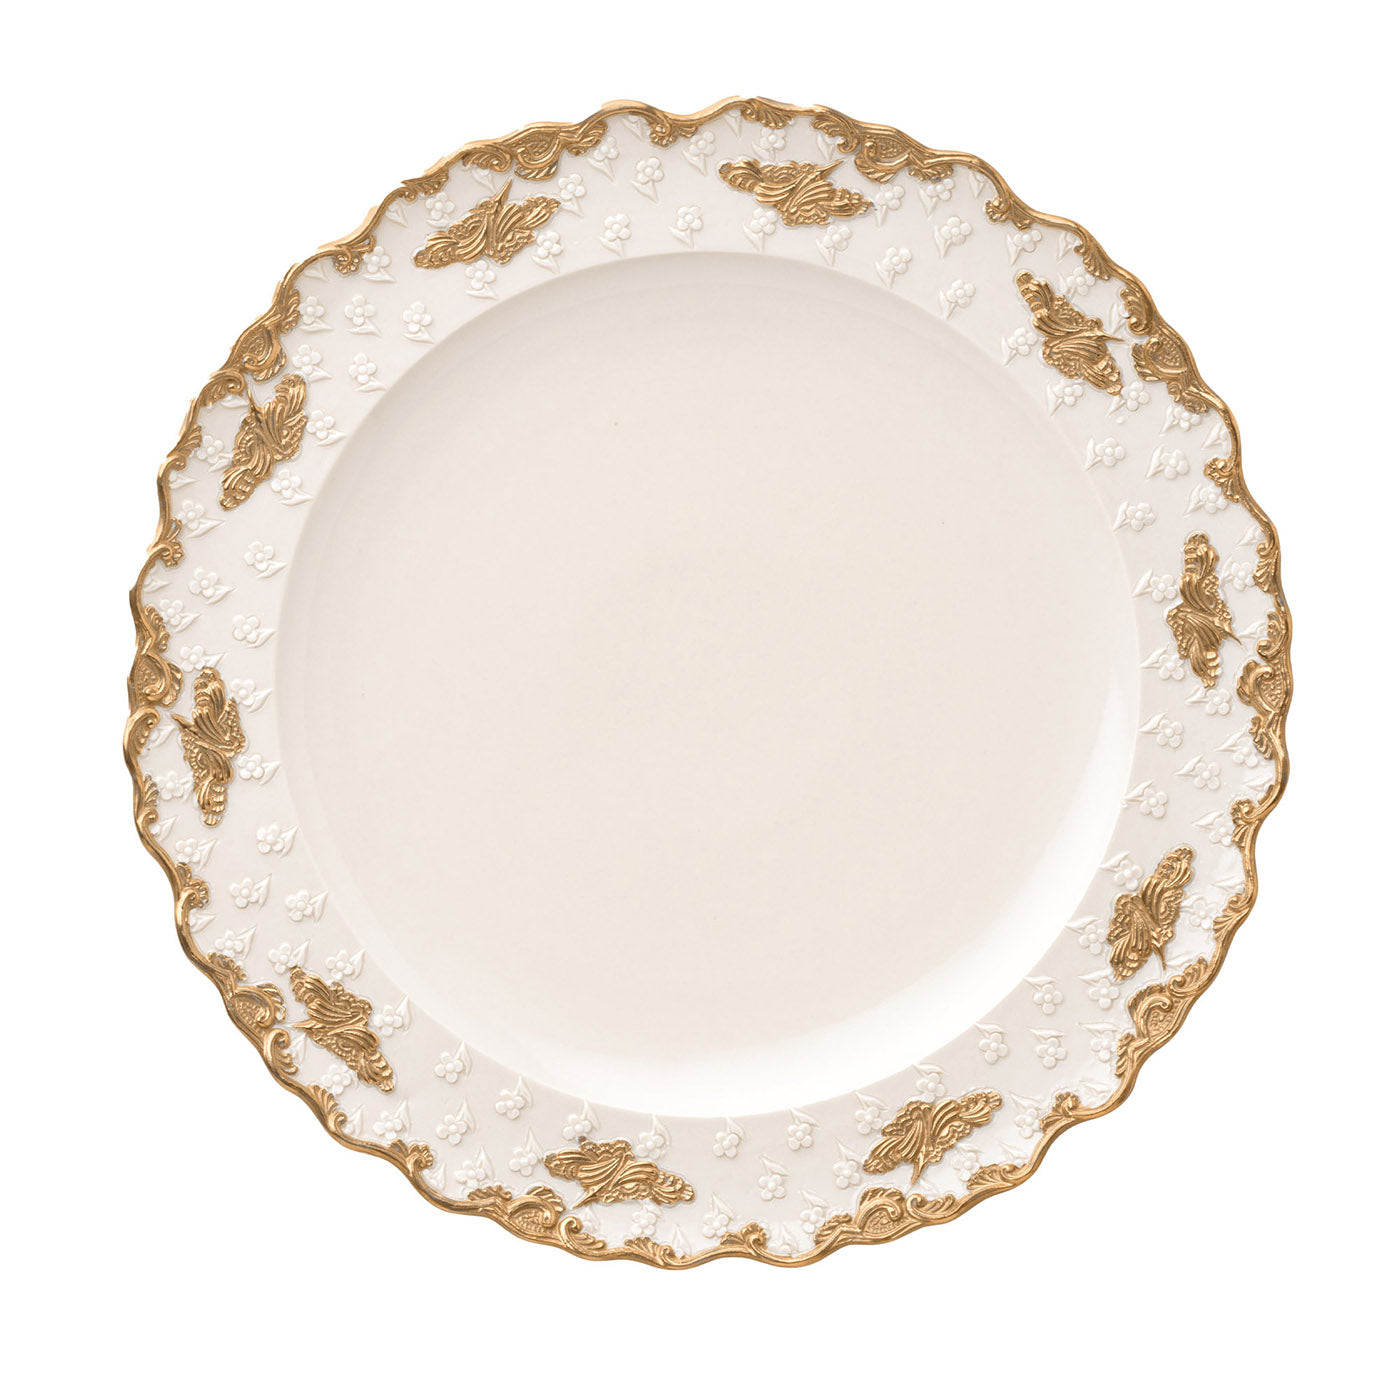 Lucia - Lot de 2 grandes assiettes plates blanches et dorées - Vue principale